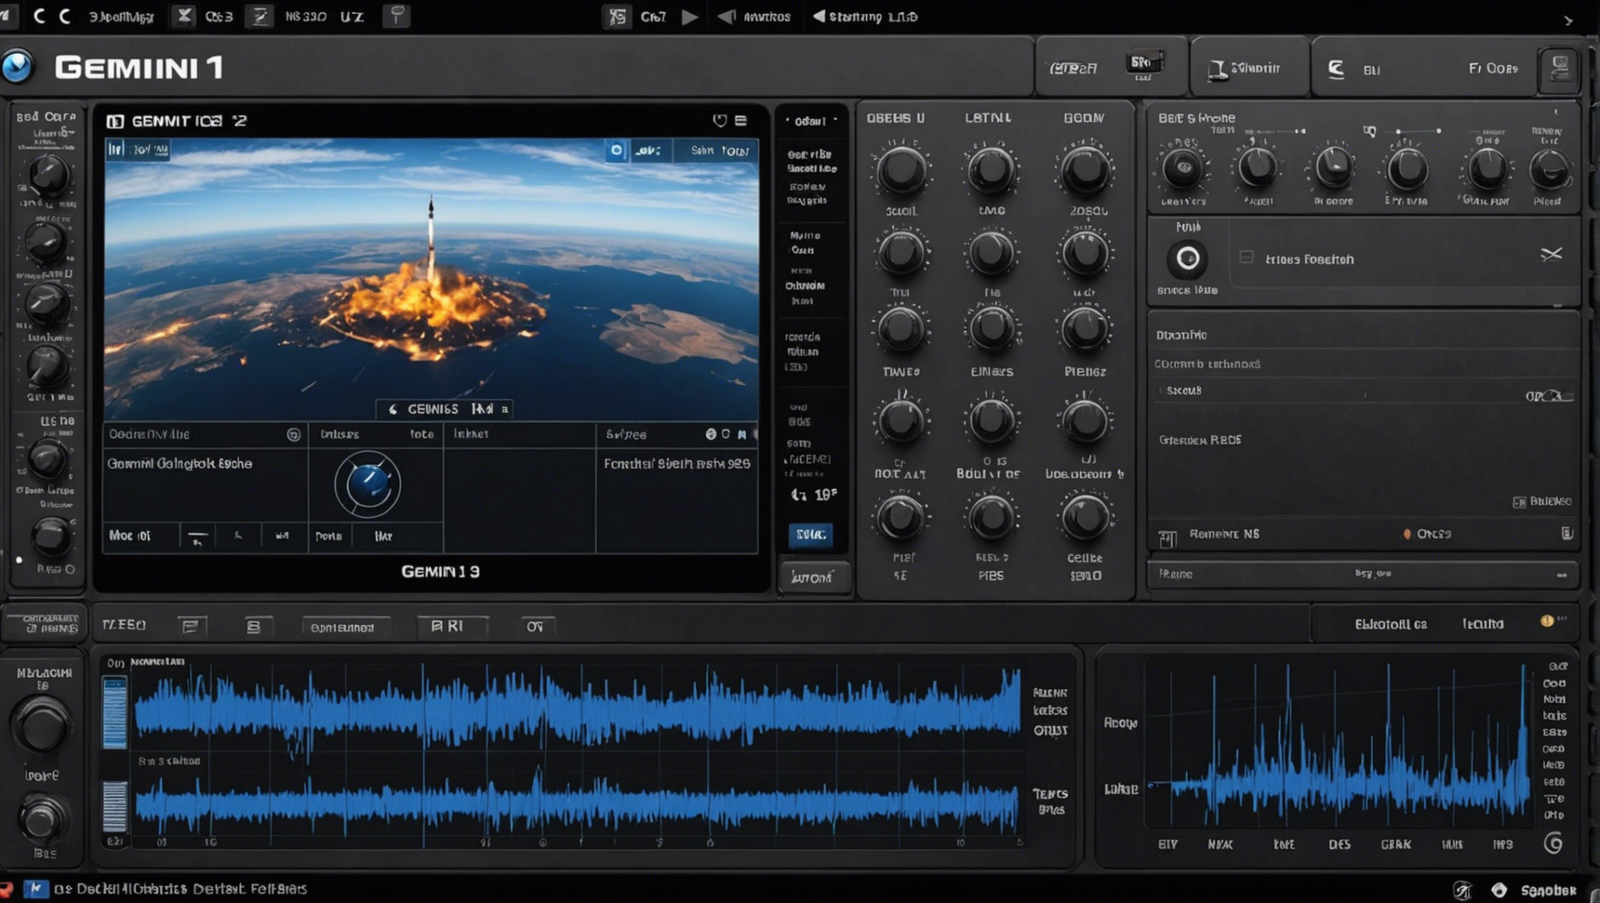 gemini 1.5 pro révolutionne le son avec une incroyable nouvelle fonctionnalité audio. découvrez la puissance du son avec gemini 1.5 pro !